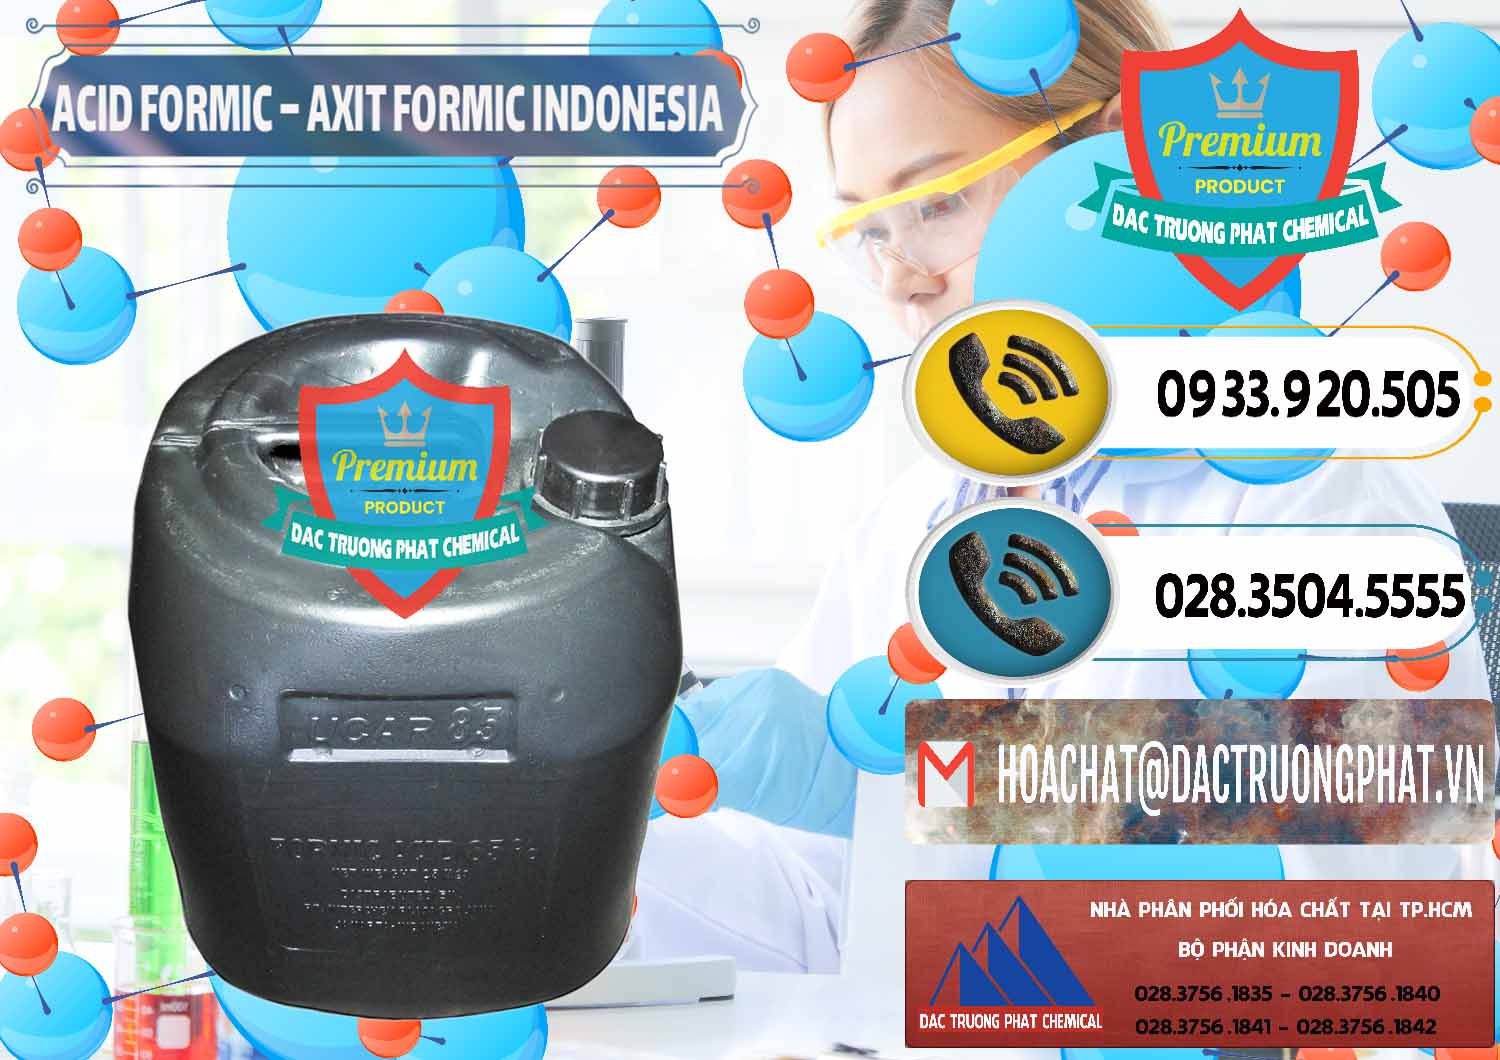 Cty cung cấp ( bán ) Acid Formic - Axit Formic Indonesia - 0026 - Công ty chuyên bán và phân phối hóa chất tại TP.HCM - hoachatdetnhuom.vn